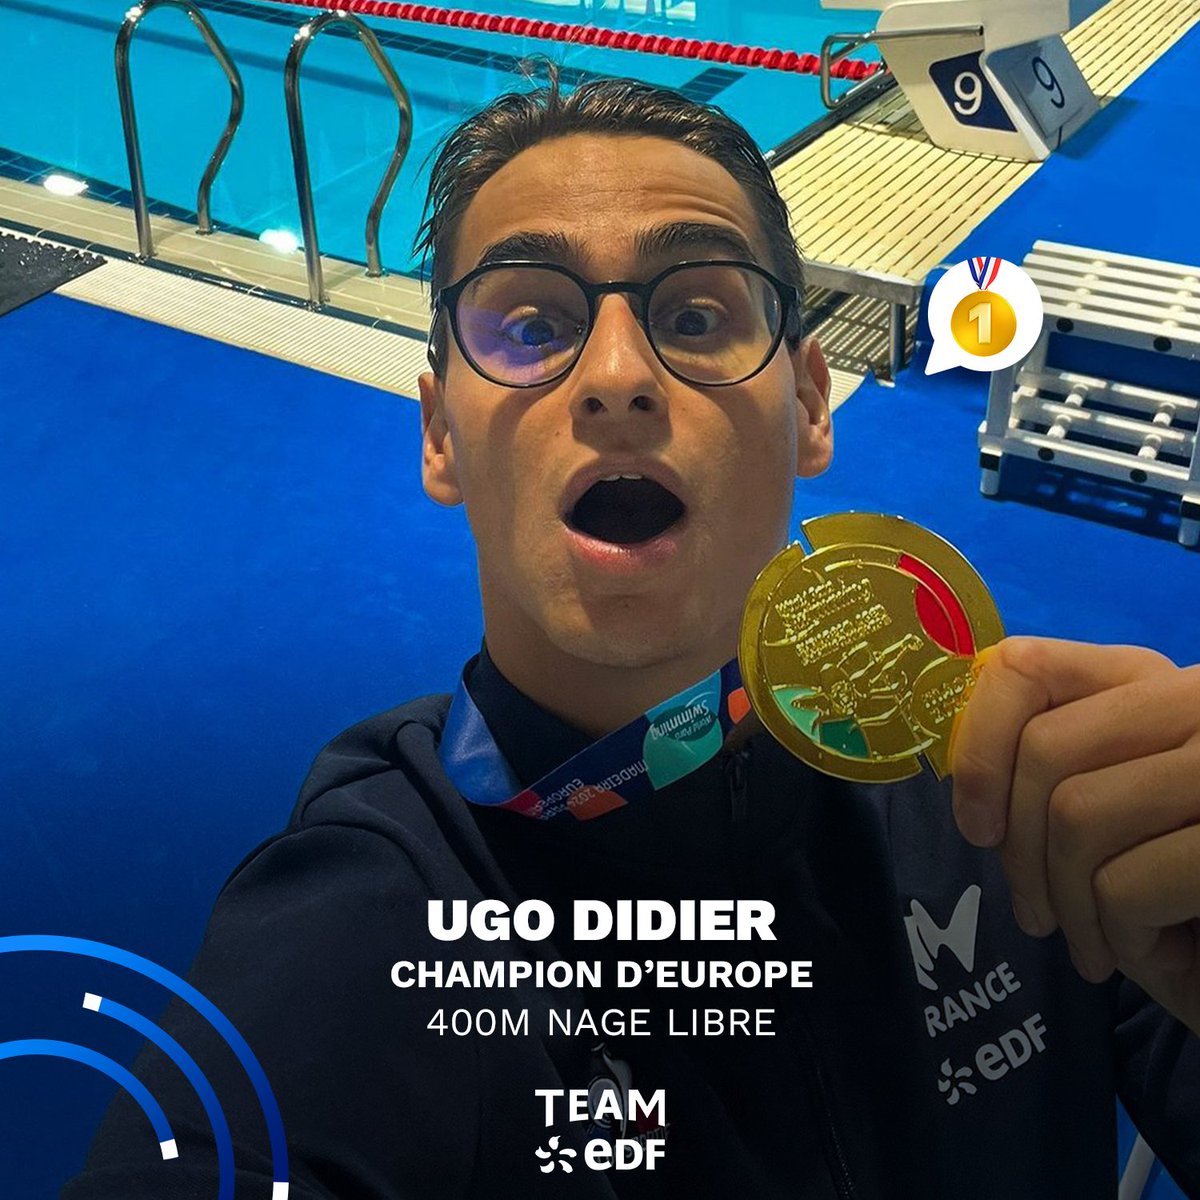 🥇 DOUBLE CHAMPION D'EUROPE ✨ Ugo Didier continue sur sa folle lancée et décroche une nouvelle médaille d'or dans ces Championnats d'Europe de para natation 🤯 Il reste encore deux possibilités de médailles pour notre para nageur du #TeamEDF ! Allez Ugo 💪⚡ #EnergieduSport